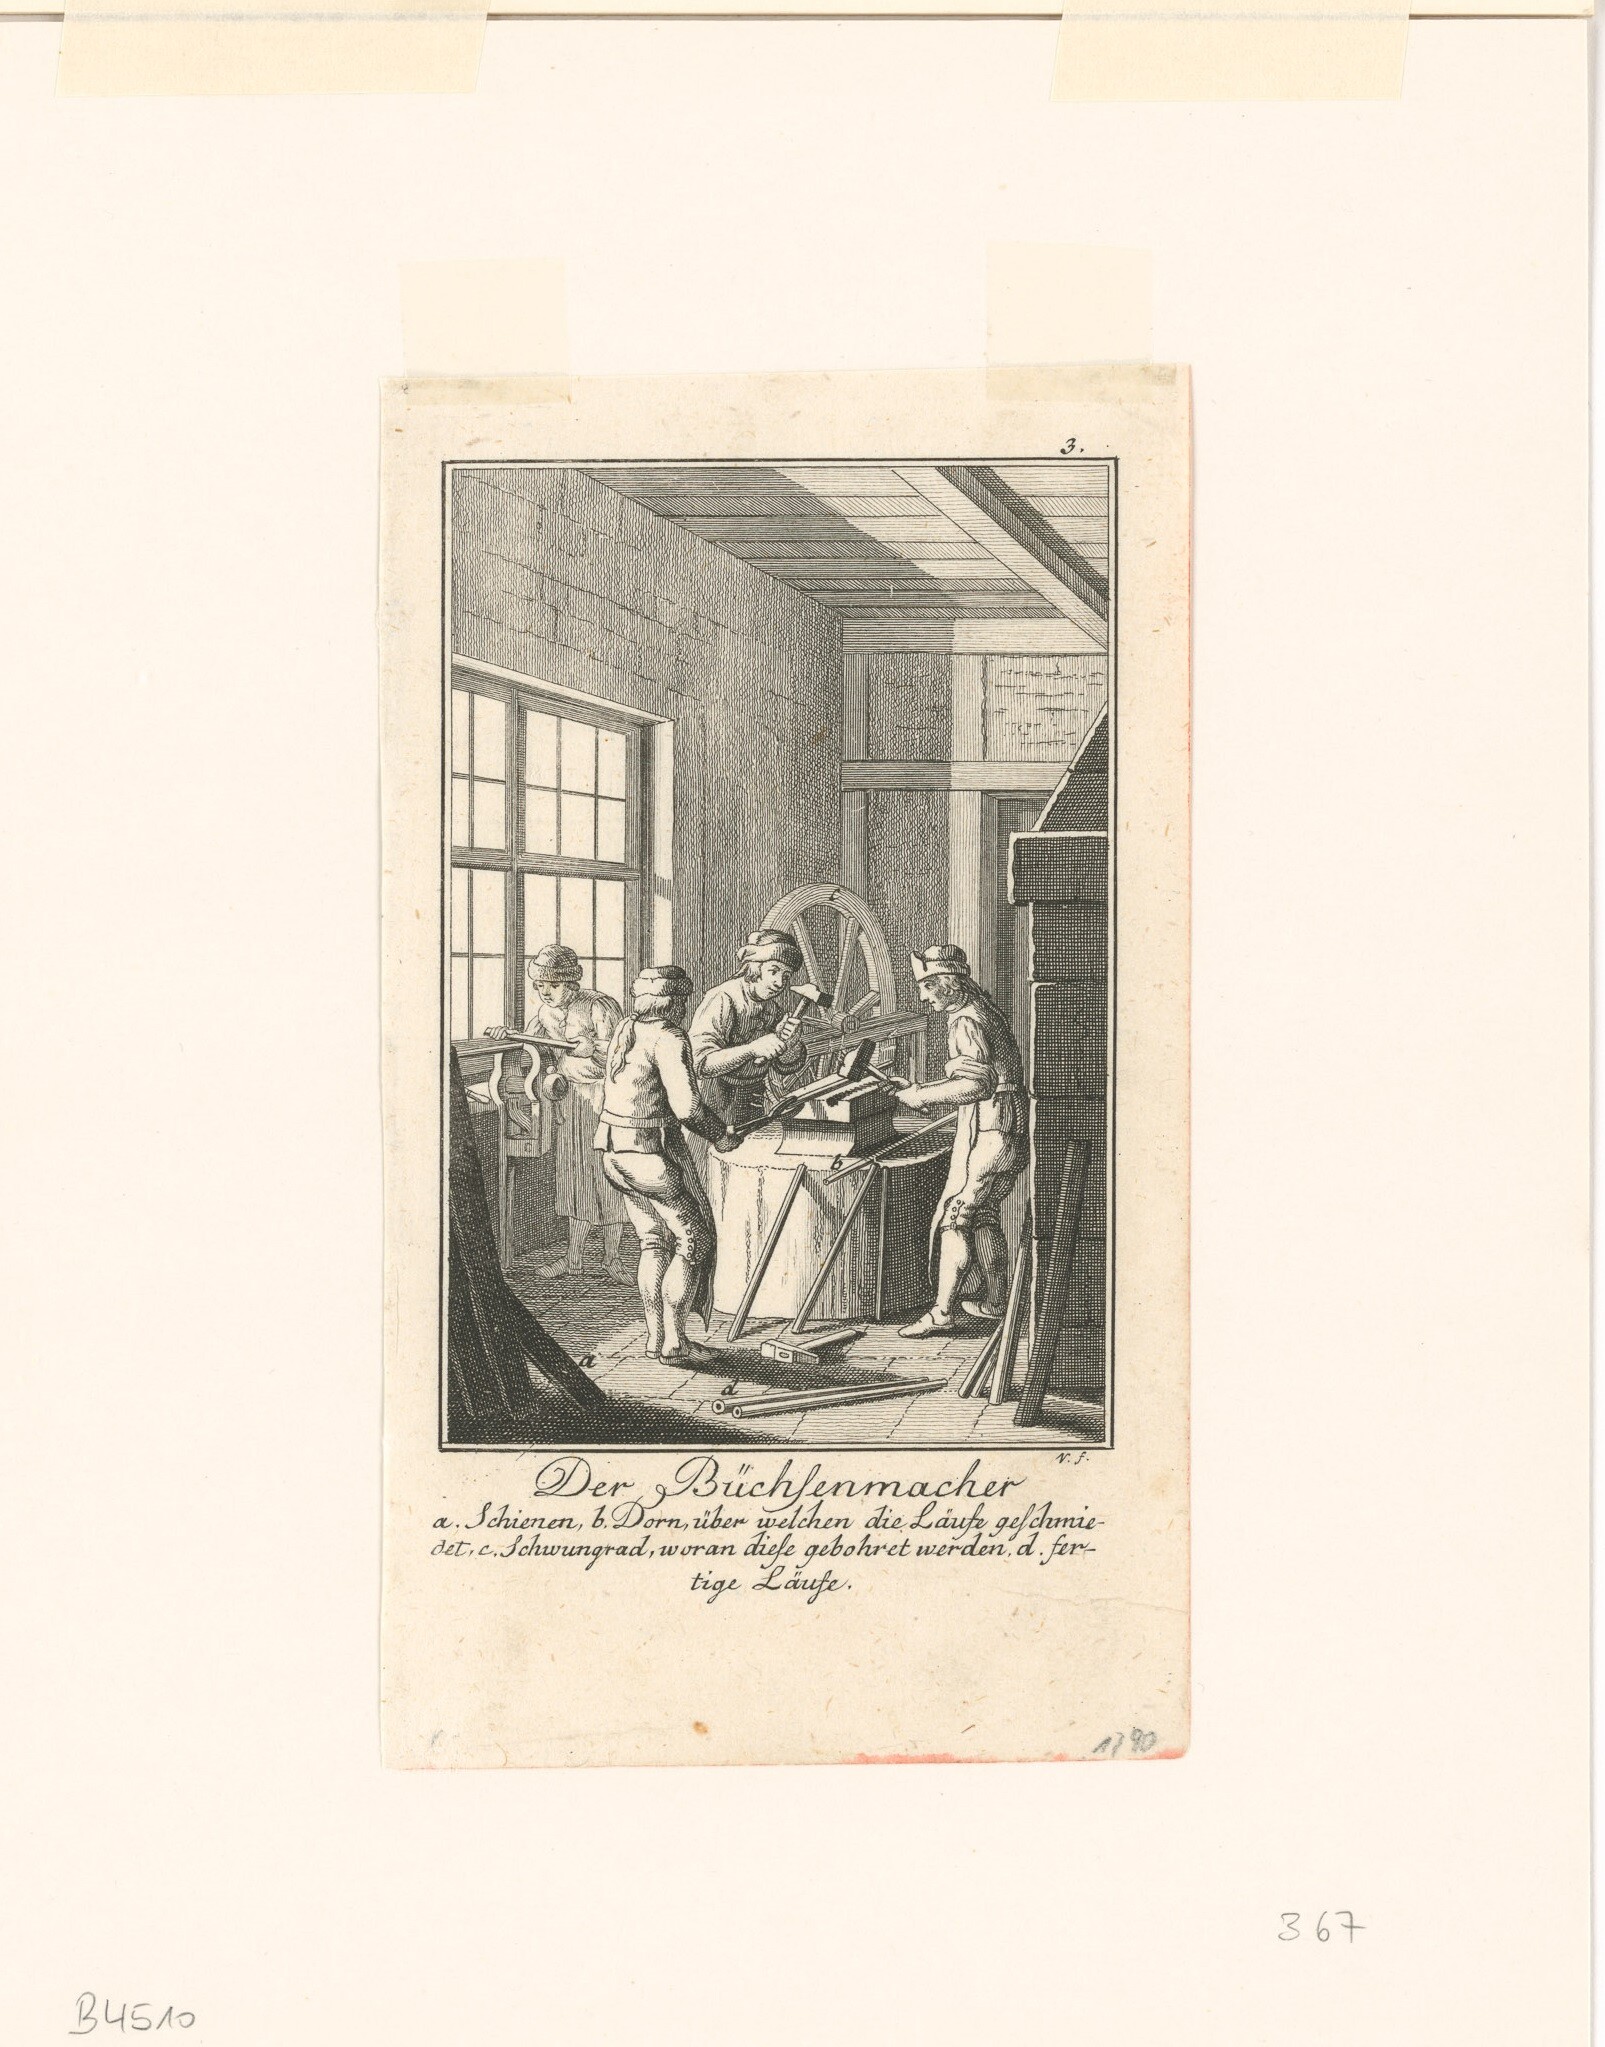 Kupferstich mit Abbildung von Büchsenmachern in der Werkstatt (Museen Burg Altena CC BY-NC-SA)